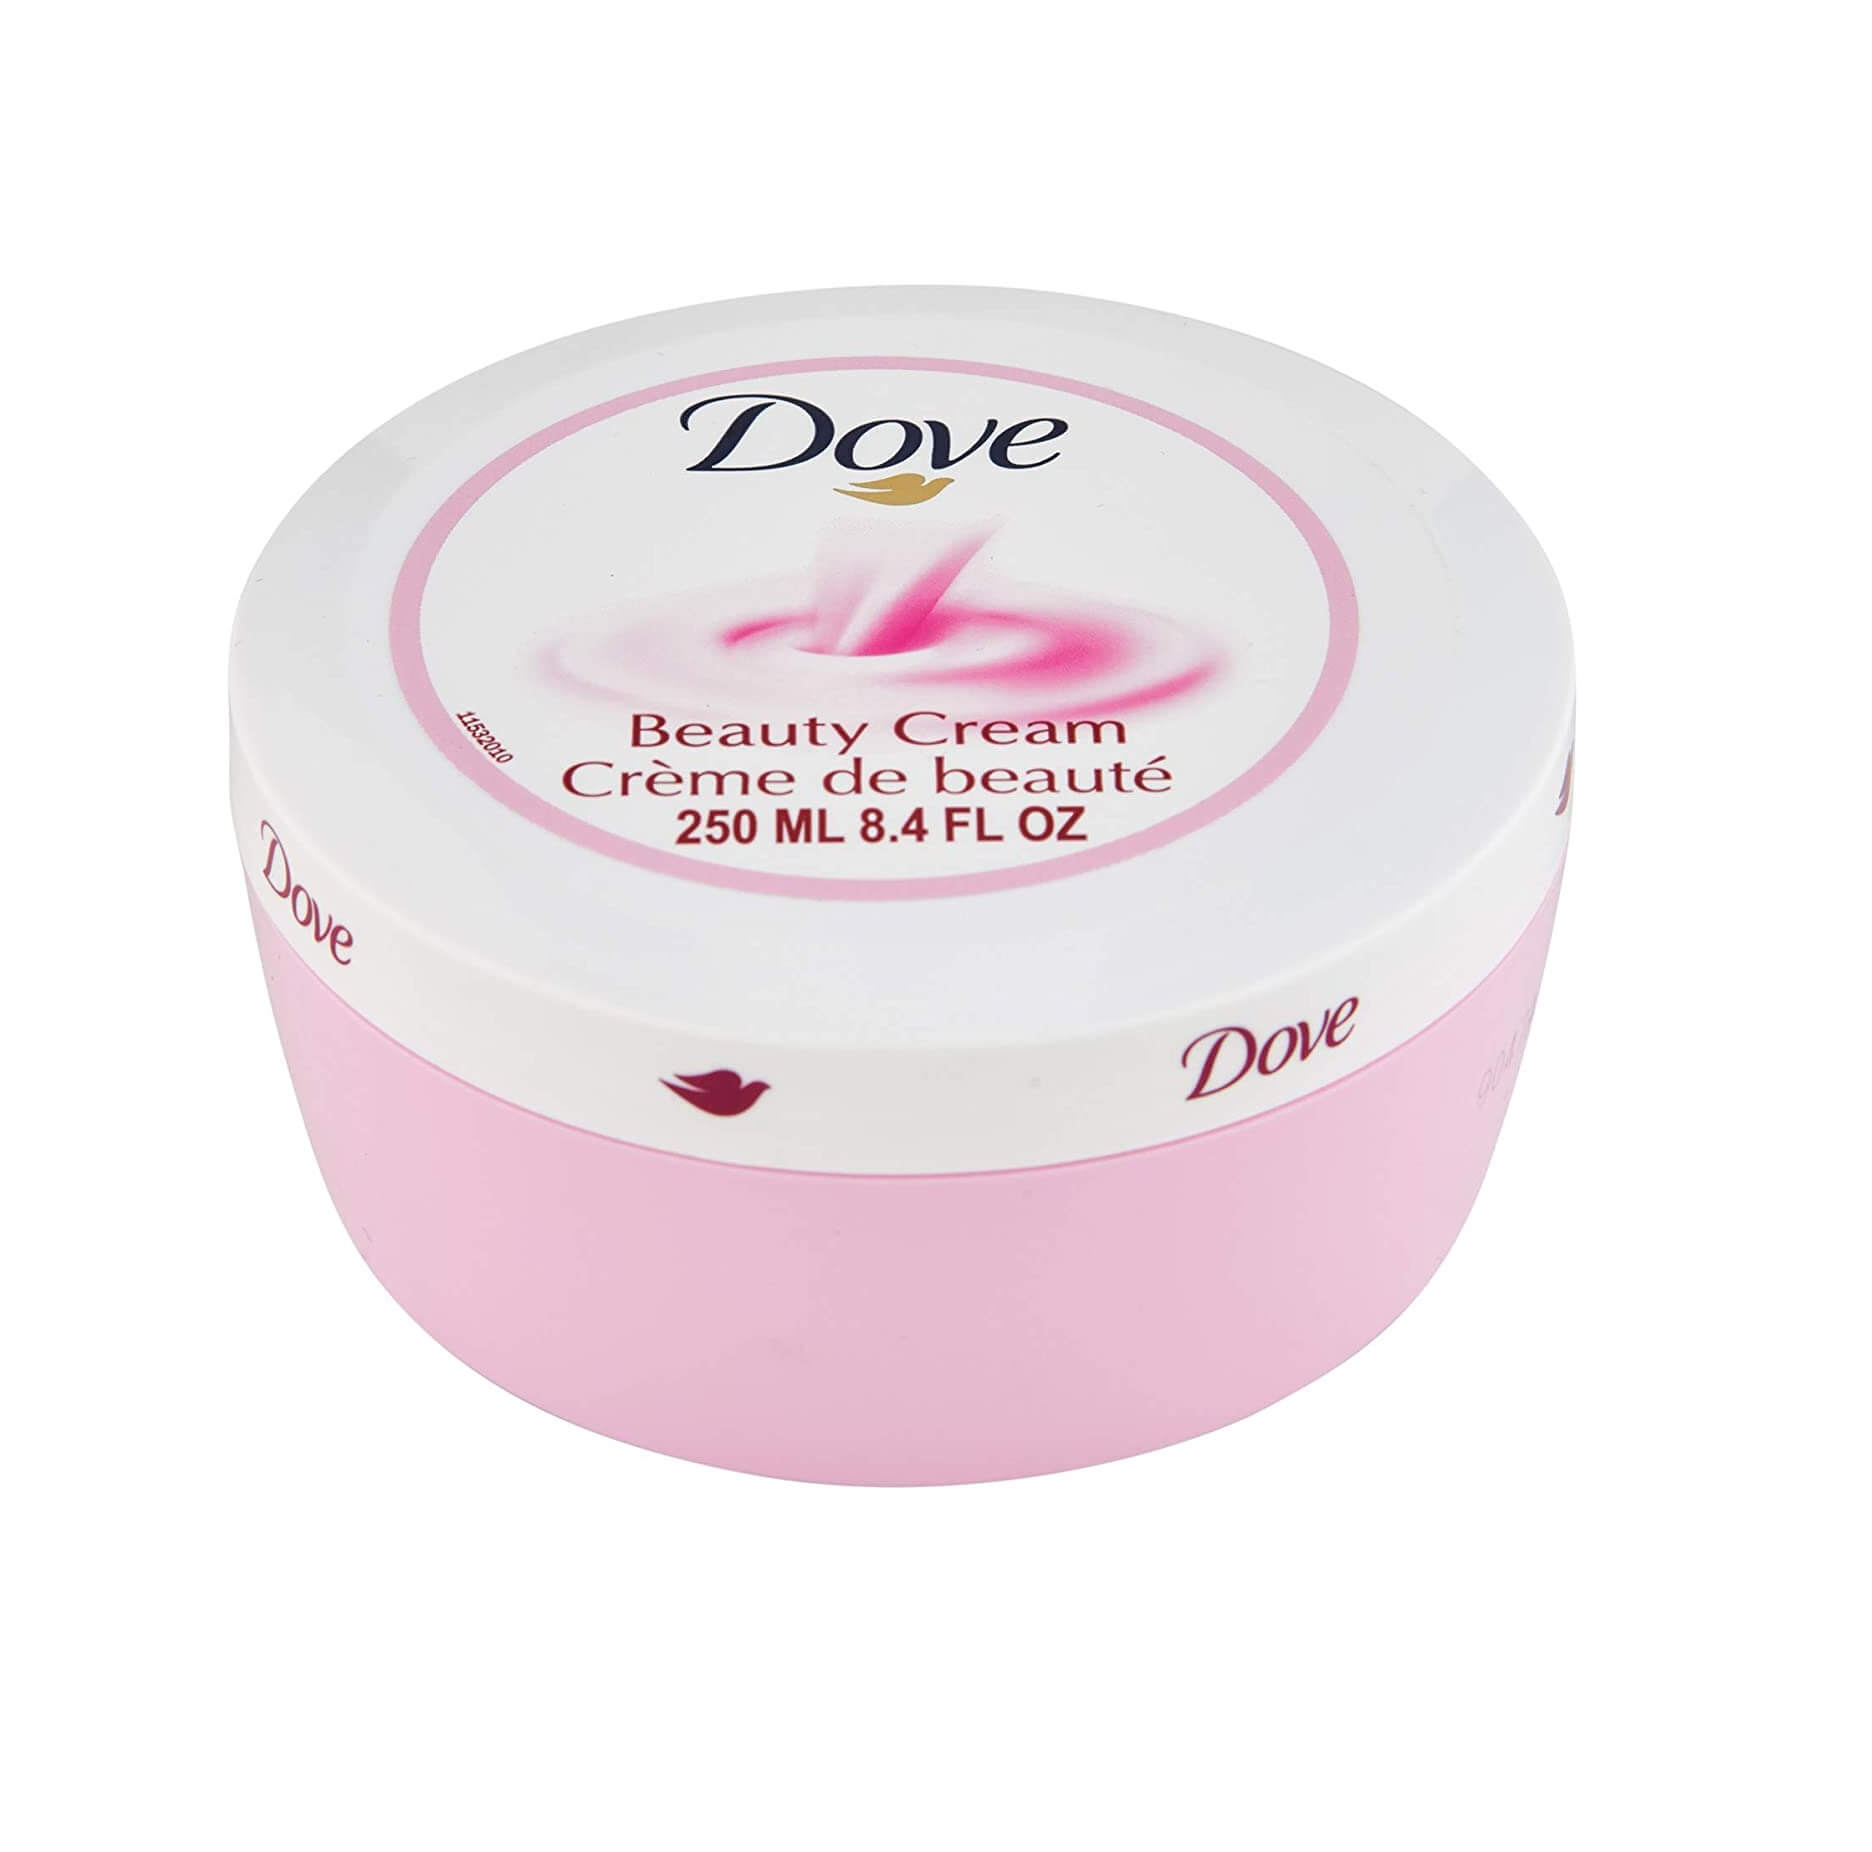 Dove Beauty Cream 250 Ml